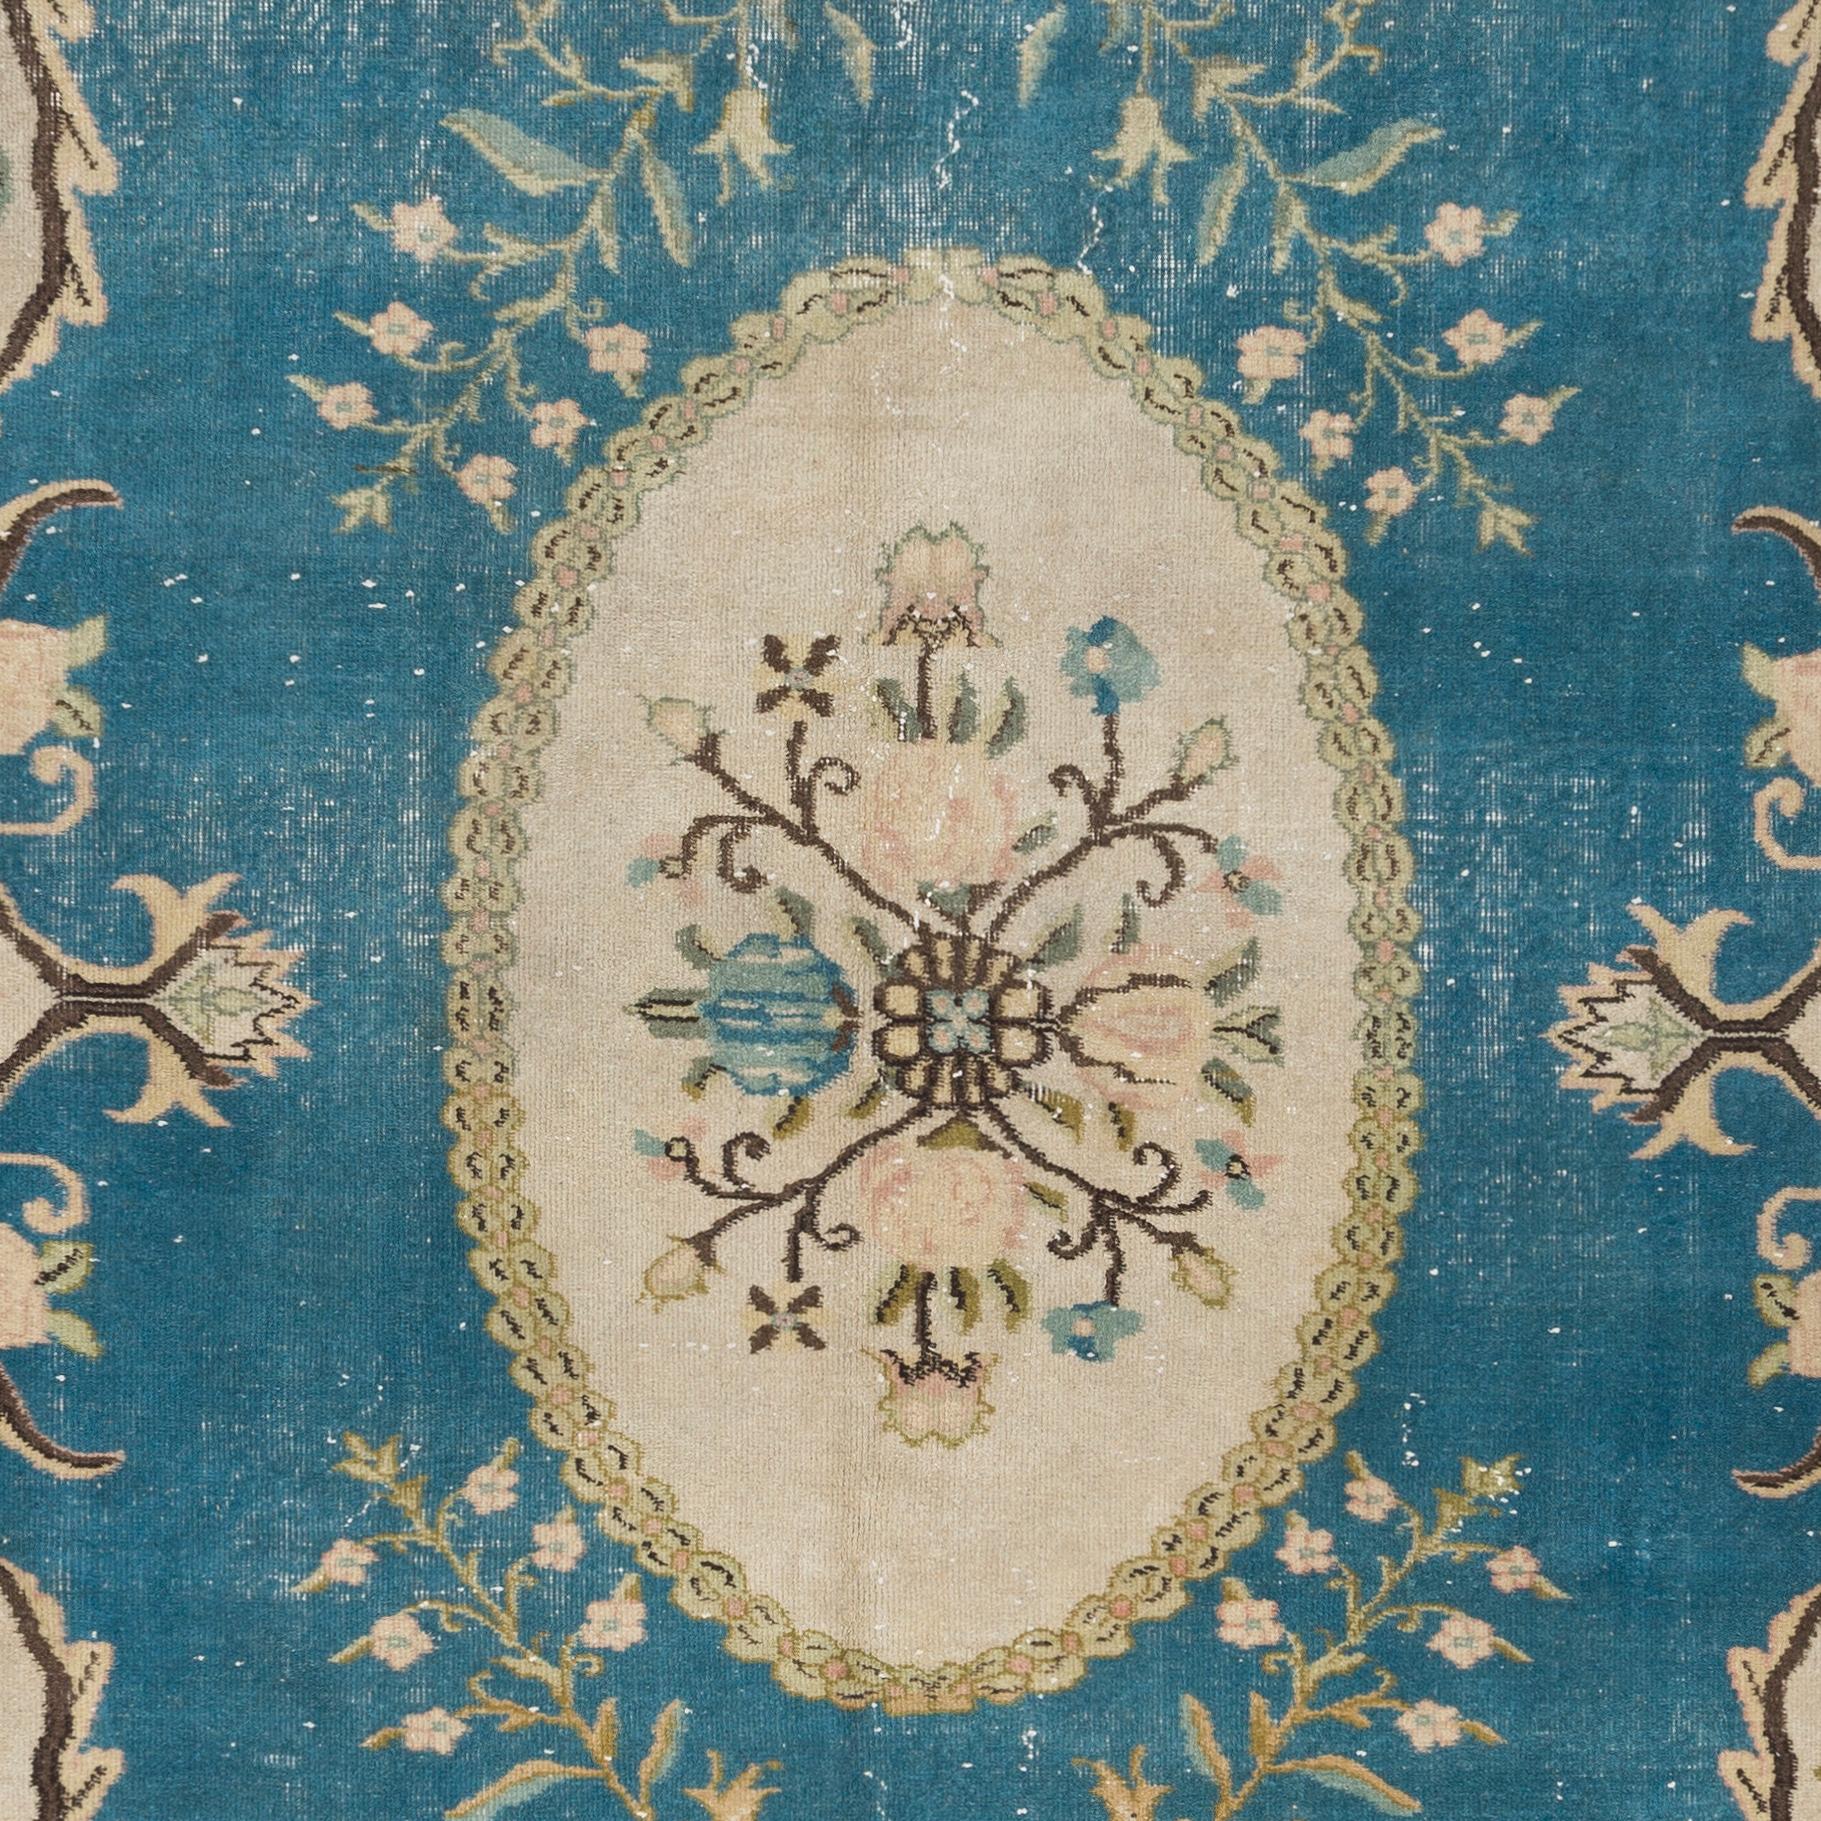 Tapis turc vintage finement noué à la main, datant des années 1960. Le tapis a même des poils bas en laine sur une base en coton. Il est lourd et repose à plat sur le sol, en très bon état et sans problème. Il a été lavé professionnellement. Le